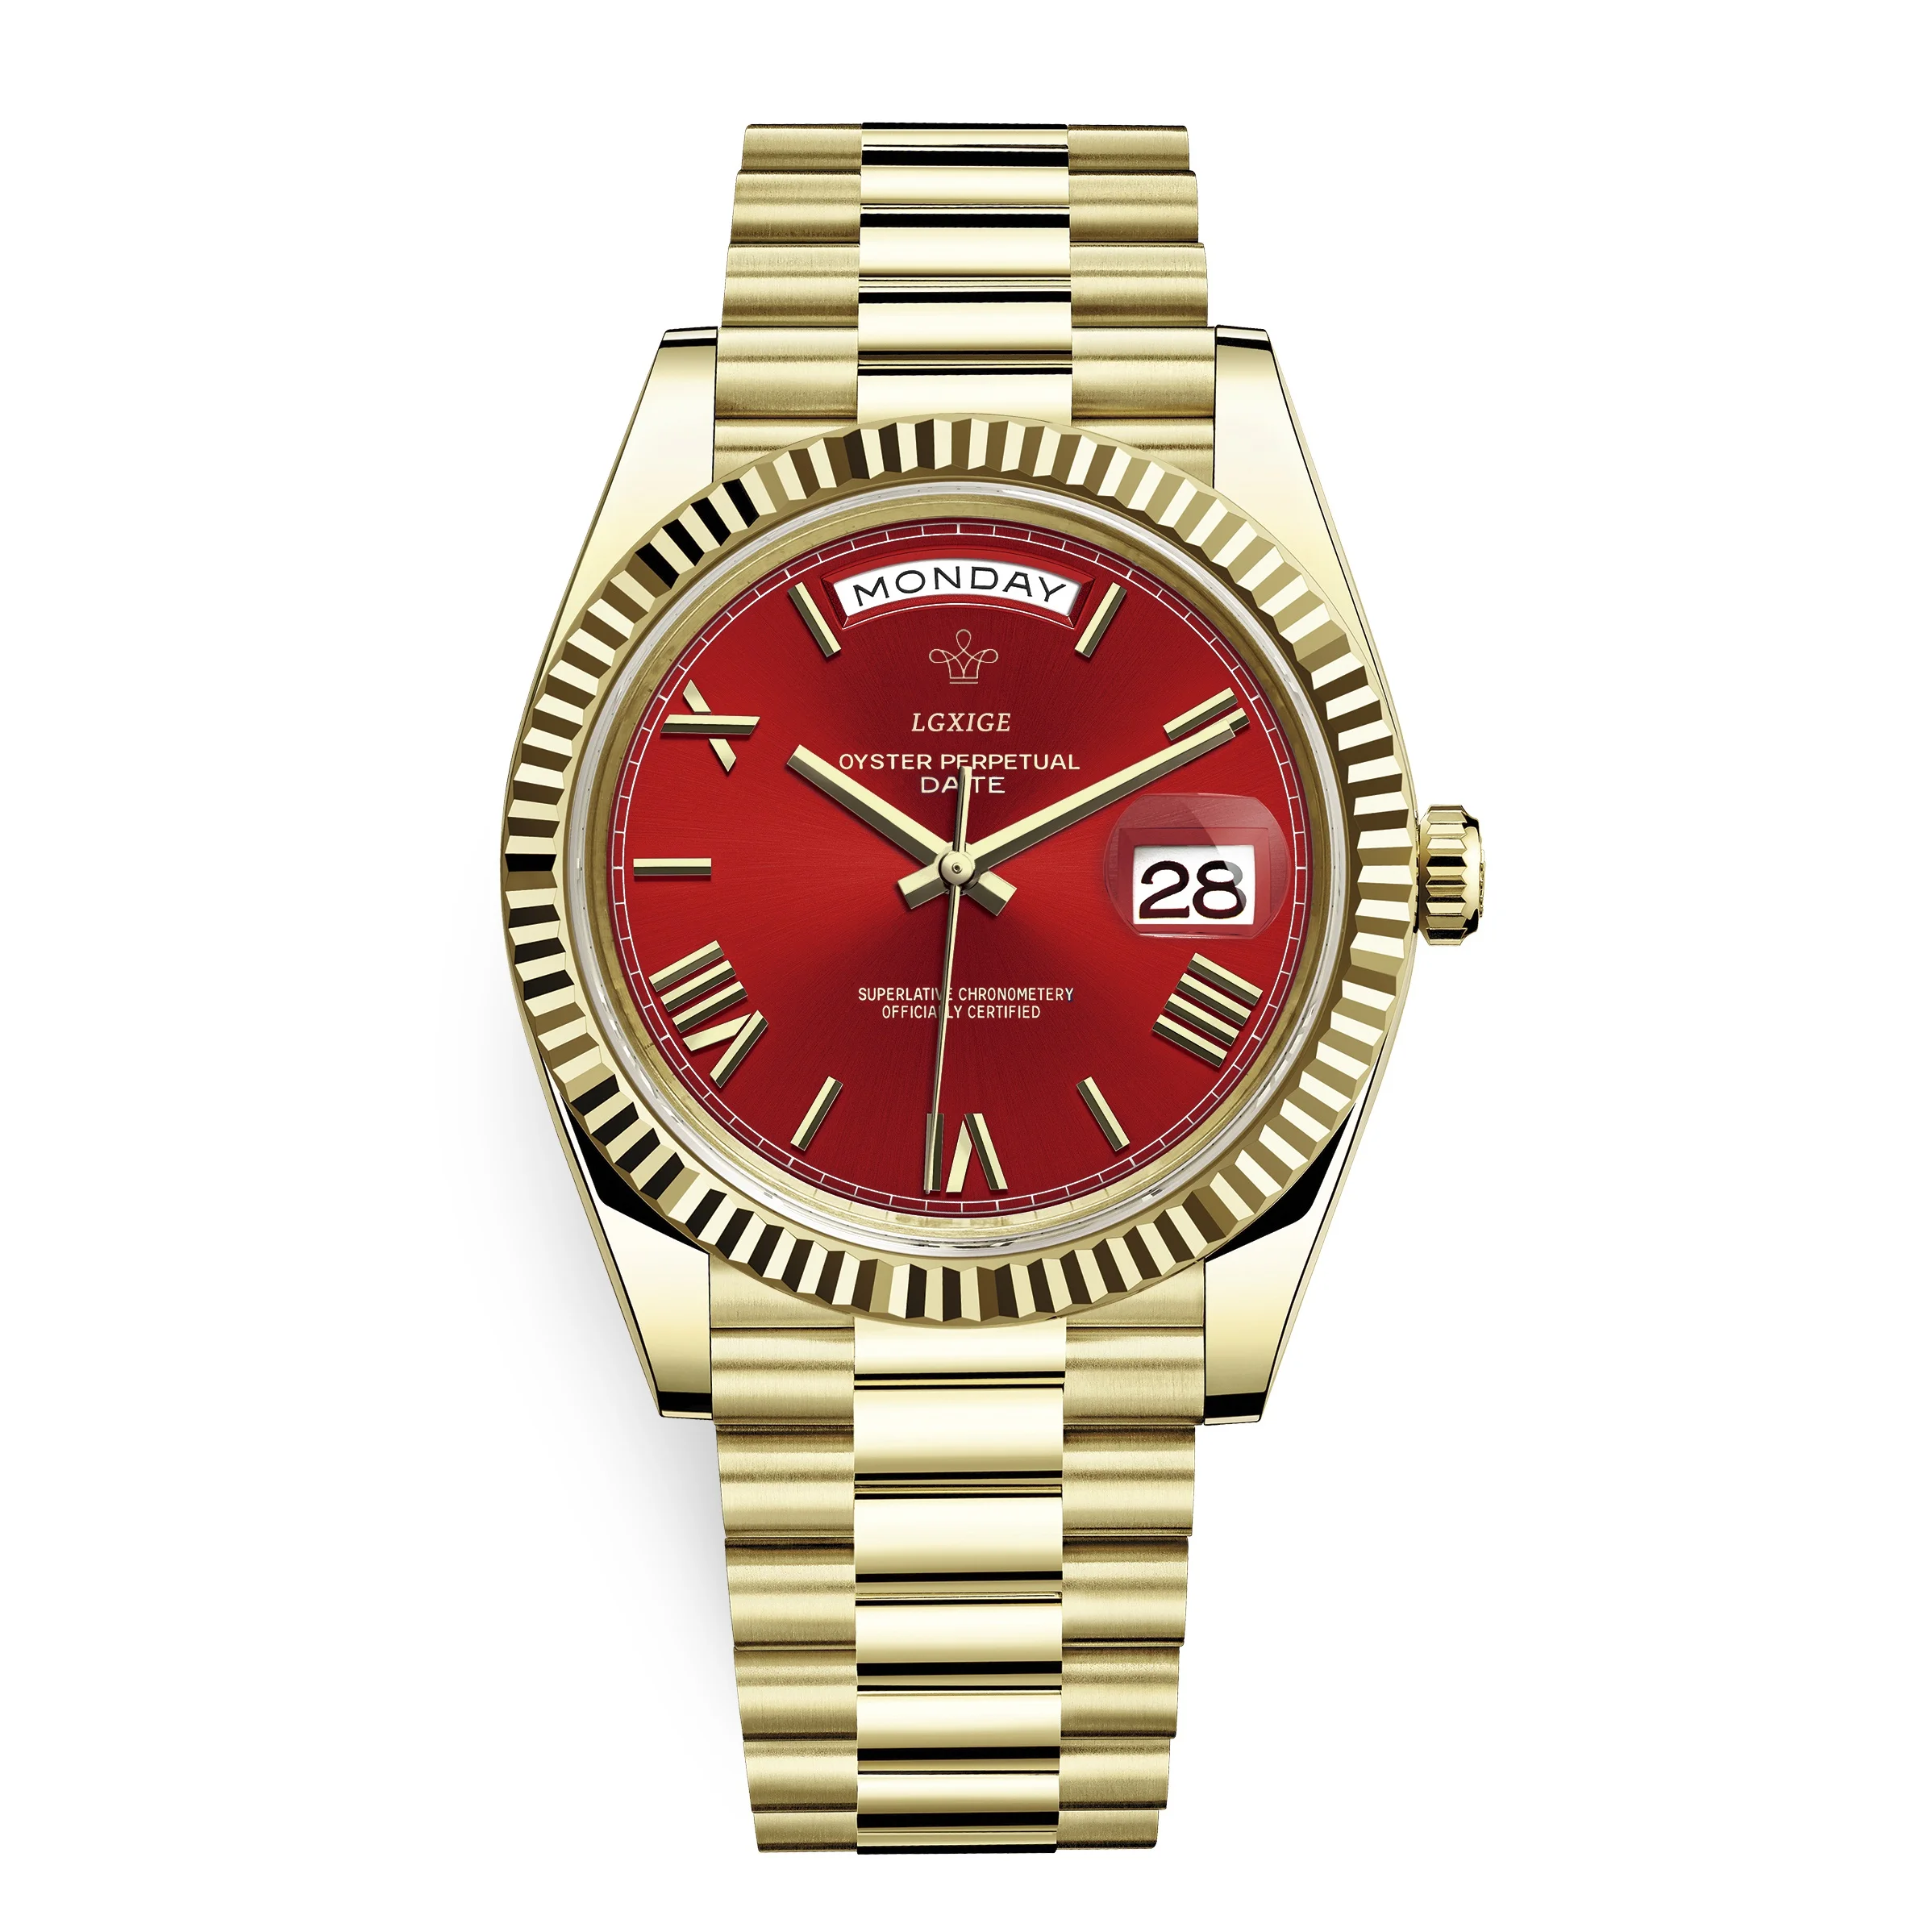 Часы мужские наручные LGXIGE брендовые Роскошные водонепроницаемые золотистые из